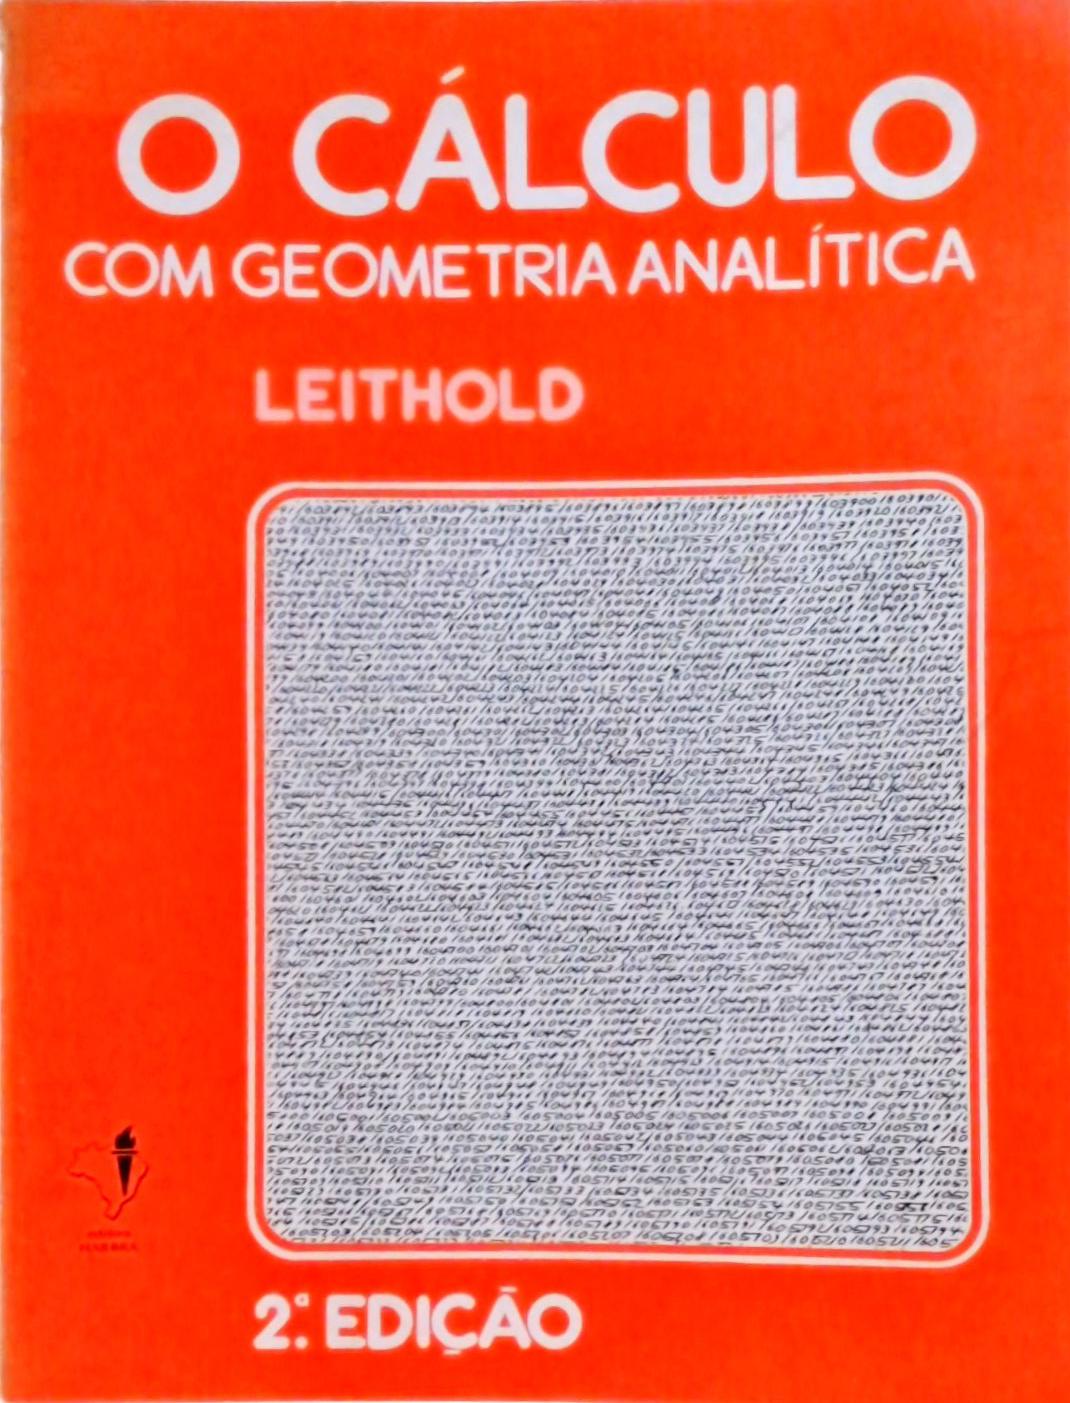 O Cálculo com Geometria Analítica (Volume 1)